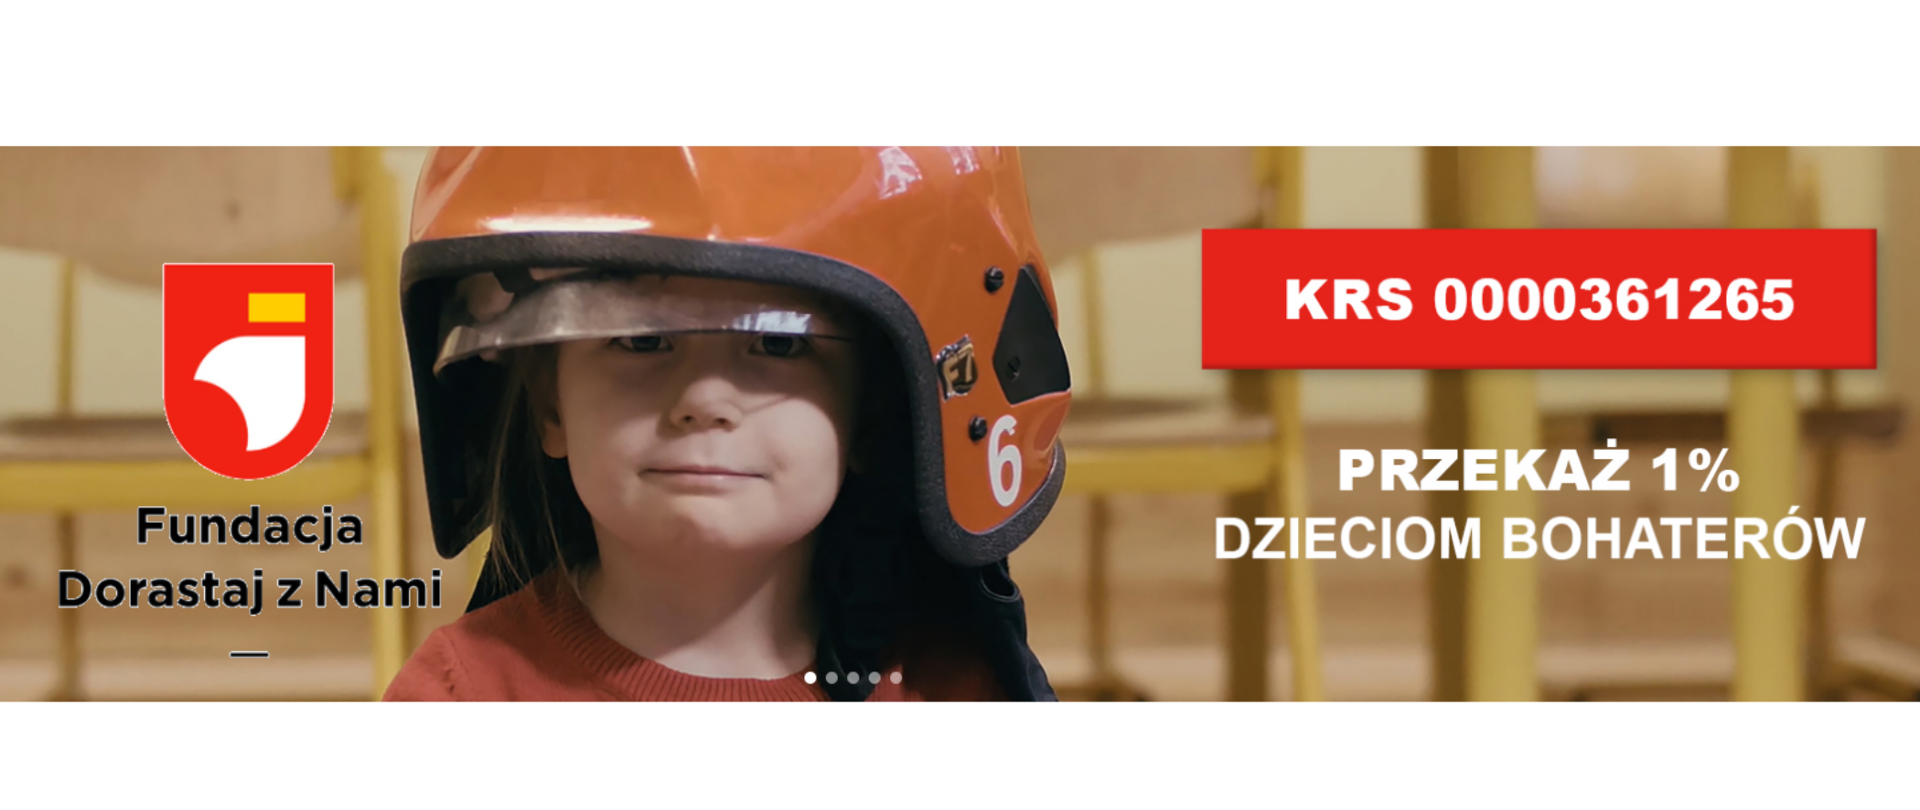 Fundacja dorastaj z nami, przekaż jeden procent dzieciom bohaterów, KRS 0000361265. Na zdjęciu widać dziecko które ma na głowie strażacki hełm.